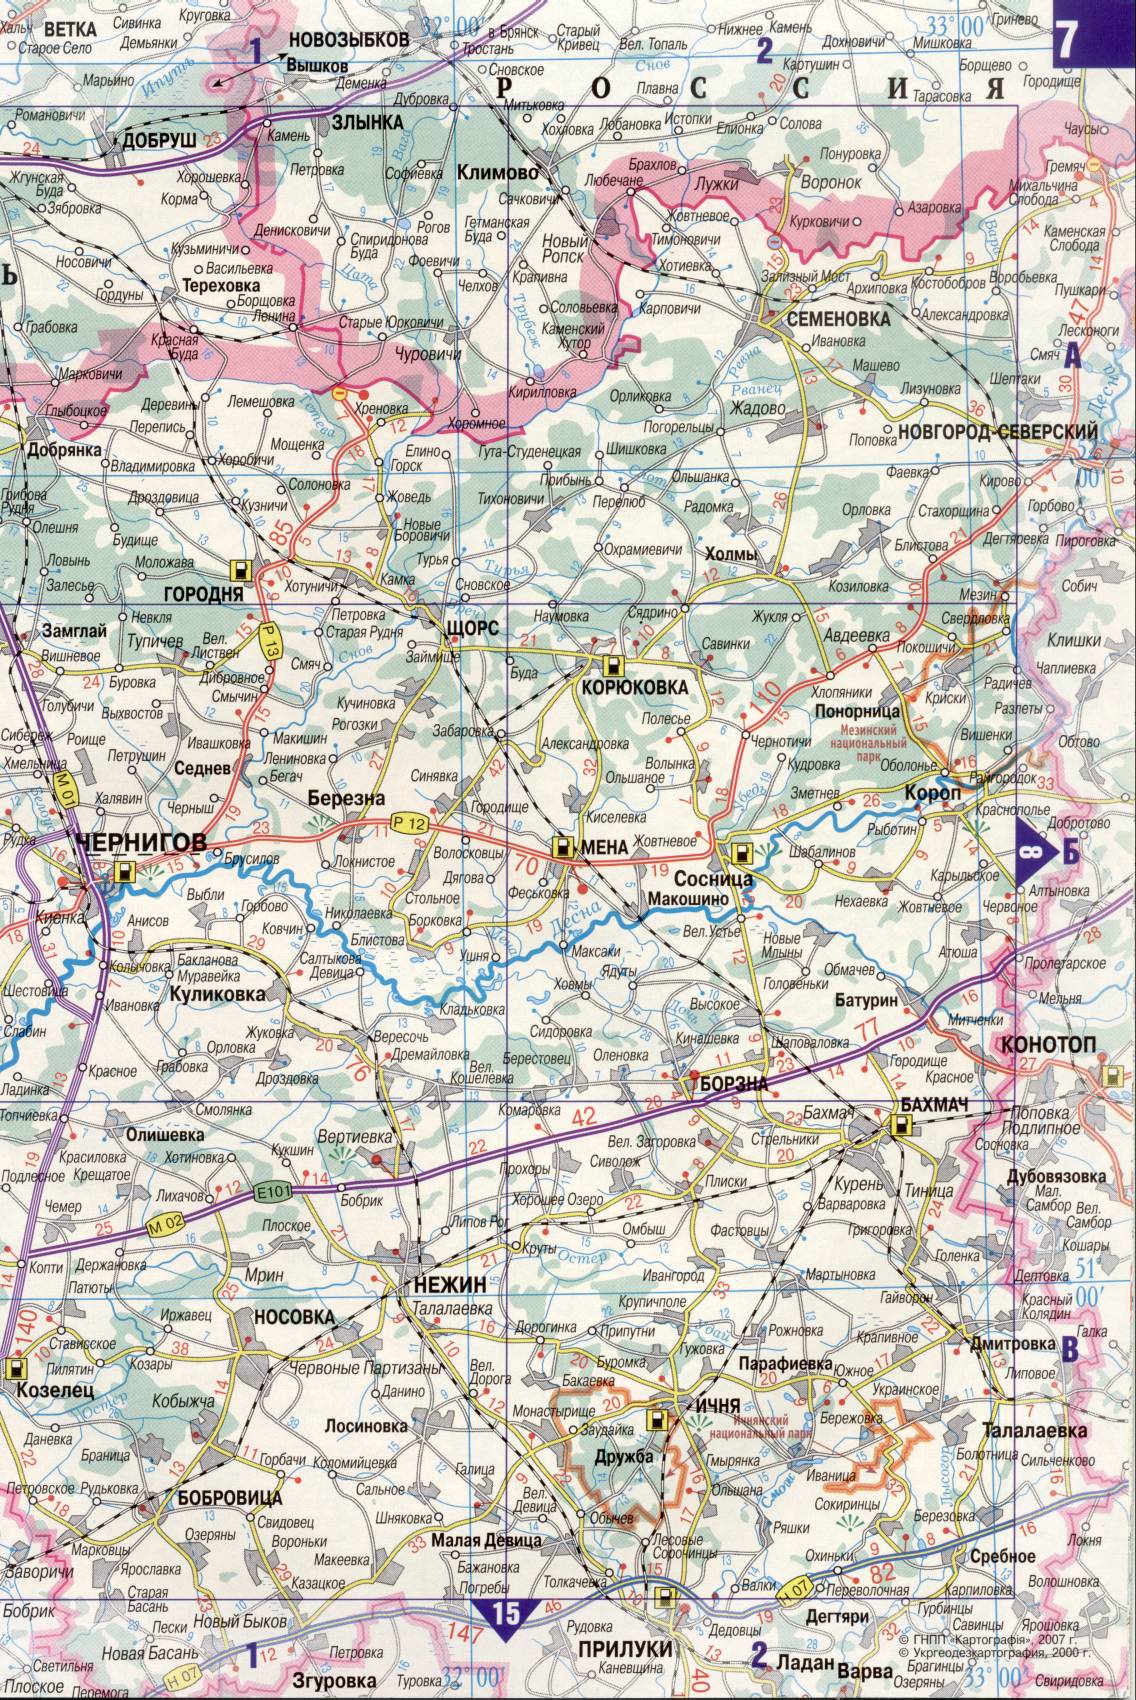 Карта Украины. Подробная карта дорог Украина из автомобильног атласа. скачать бесплатно, F0